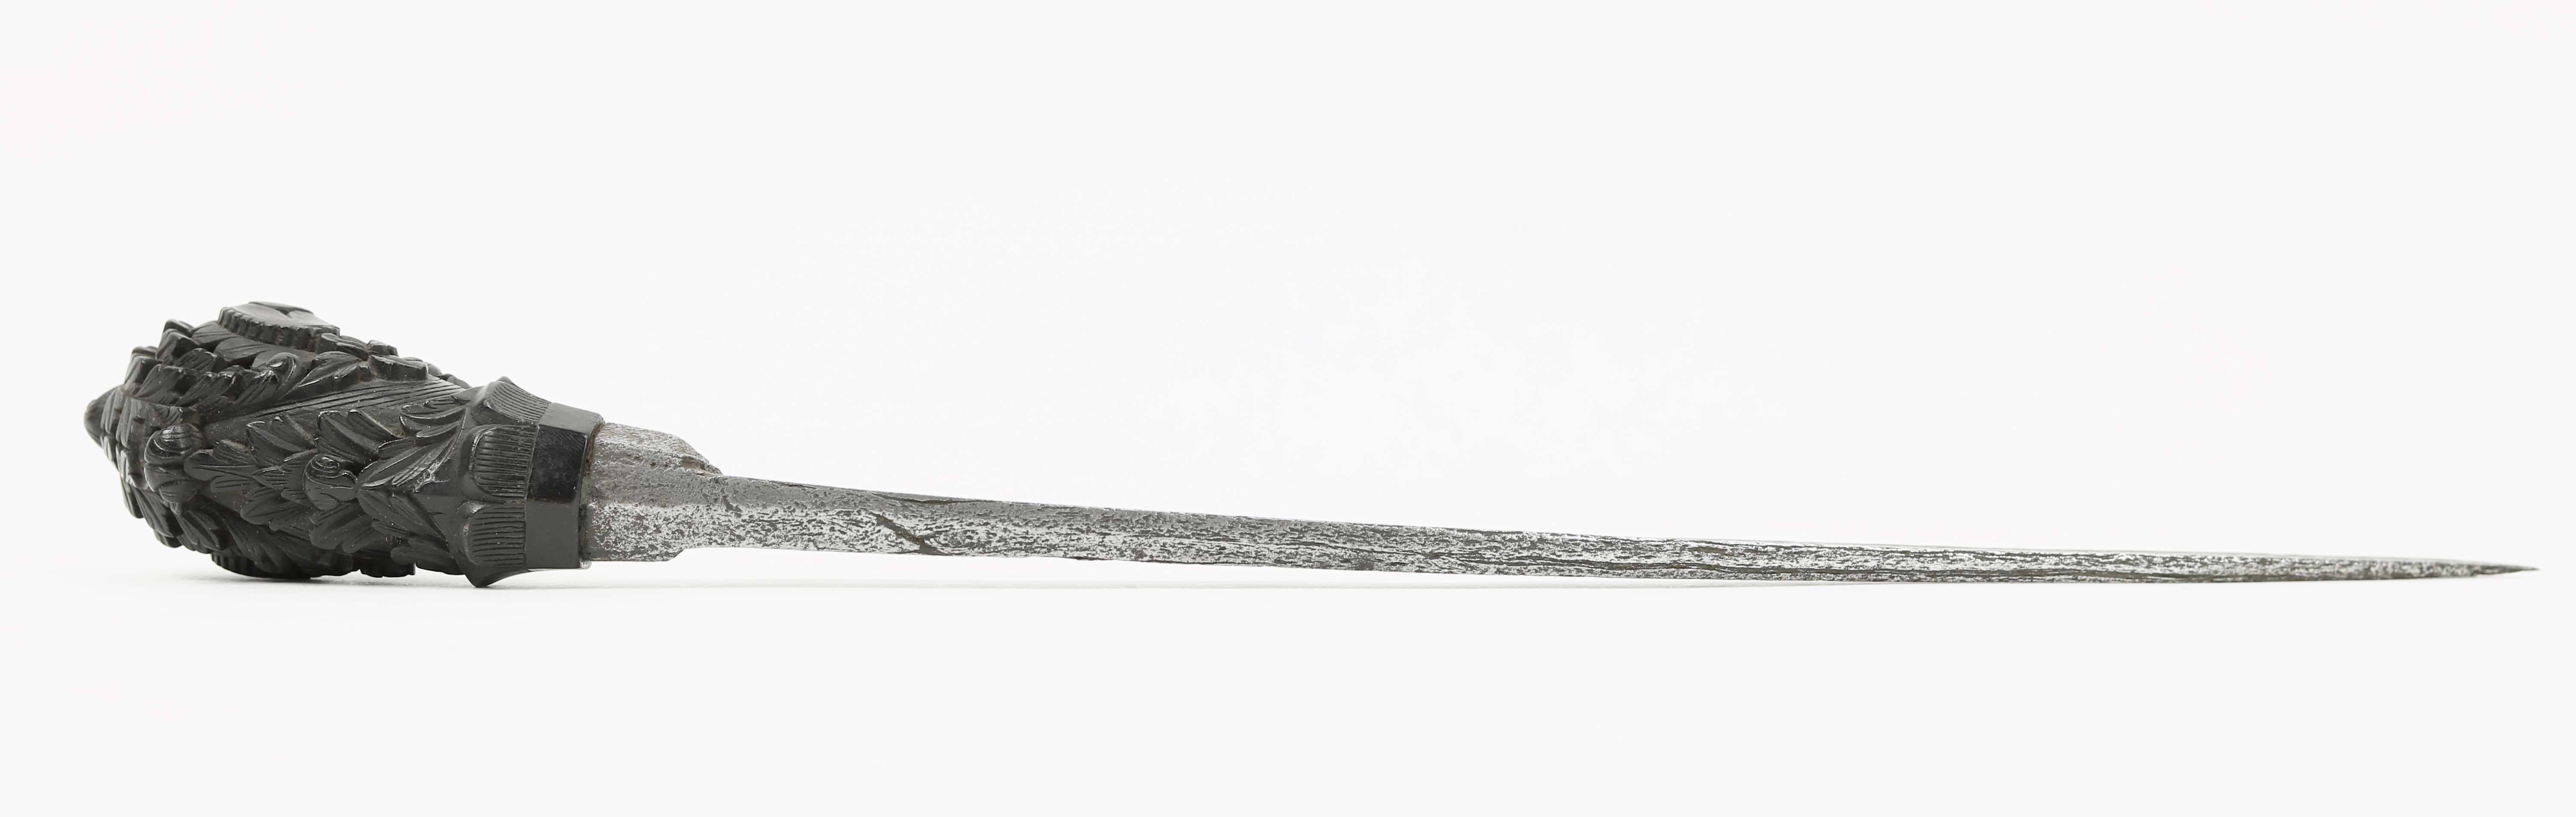 Sewar dagger from Sumatra